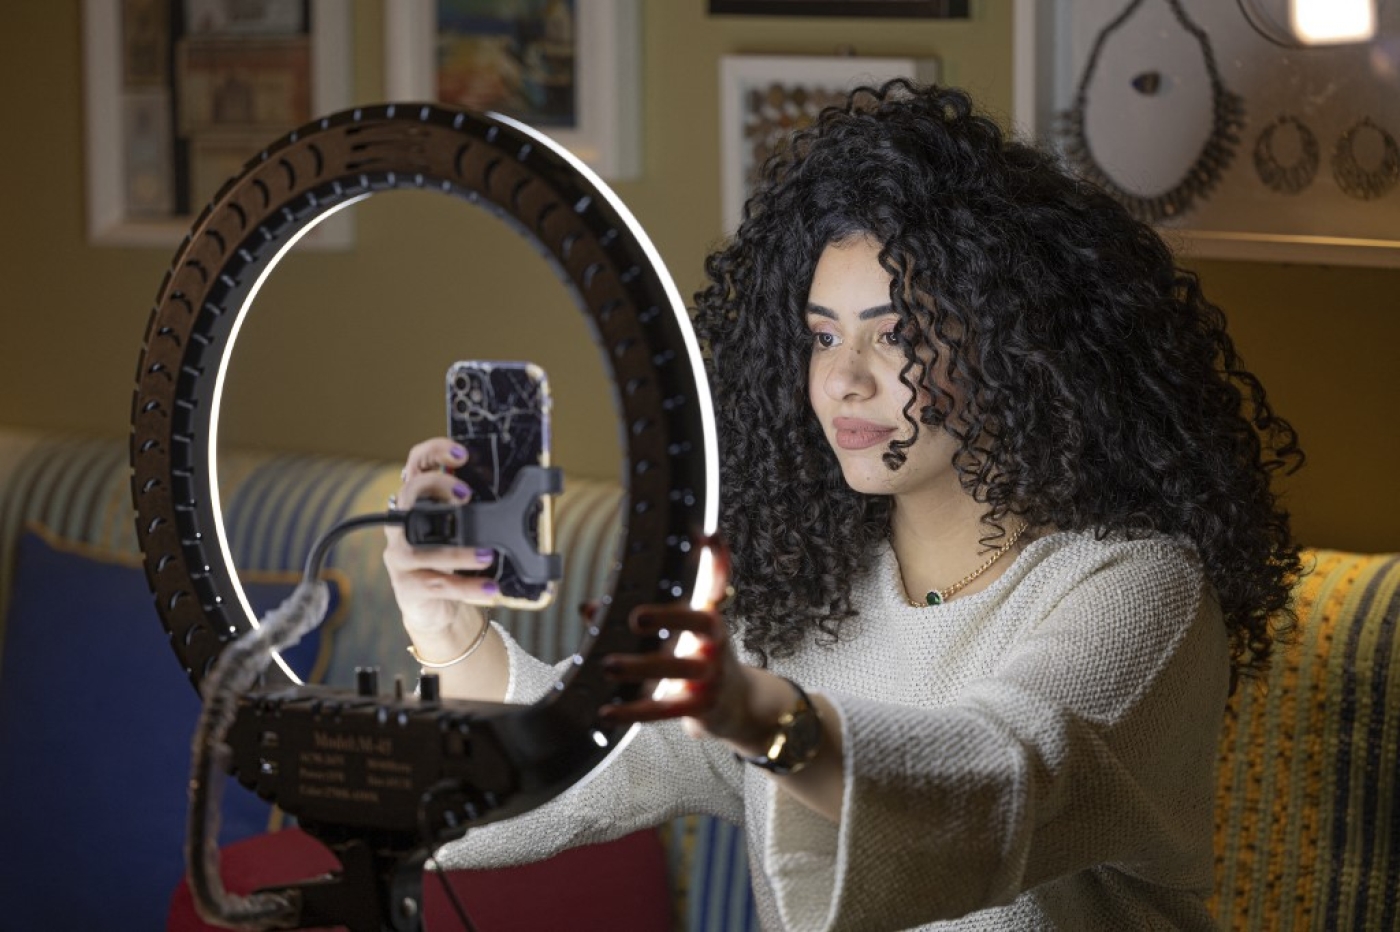 Mariam Ashraf, enseignante et « influenceuse des cheveux naturels », fait un direct chez elle au Caire, le 22 mars 2022 (AFP/Khaled Desouki)